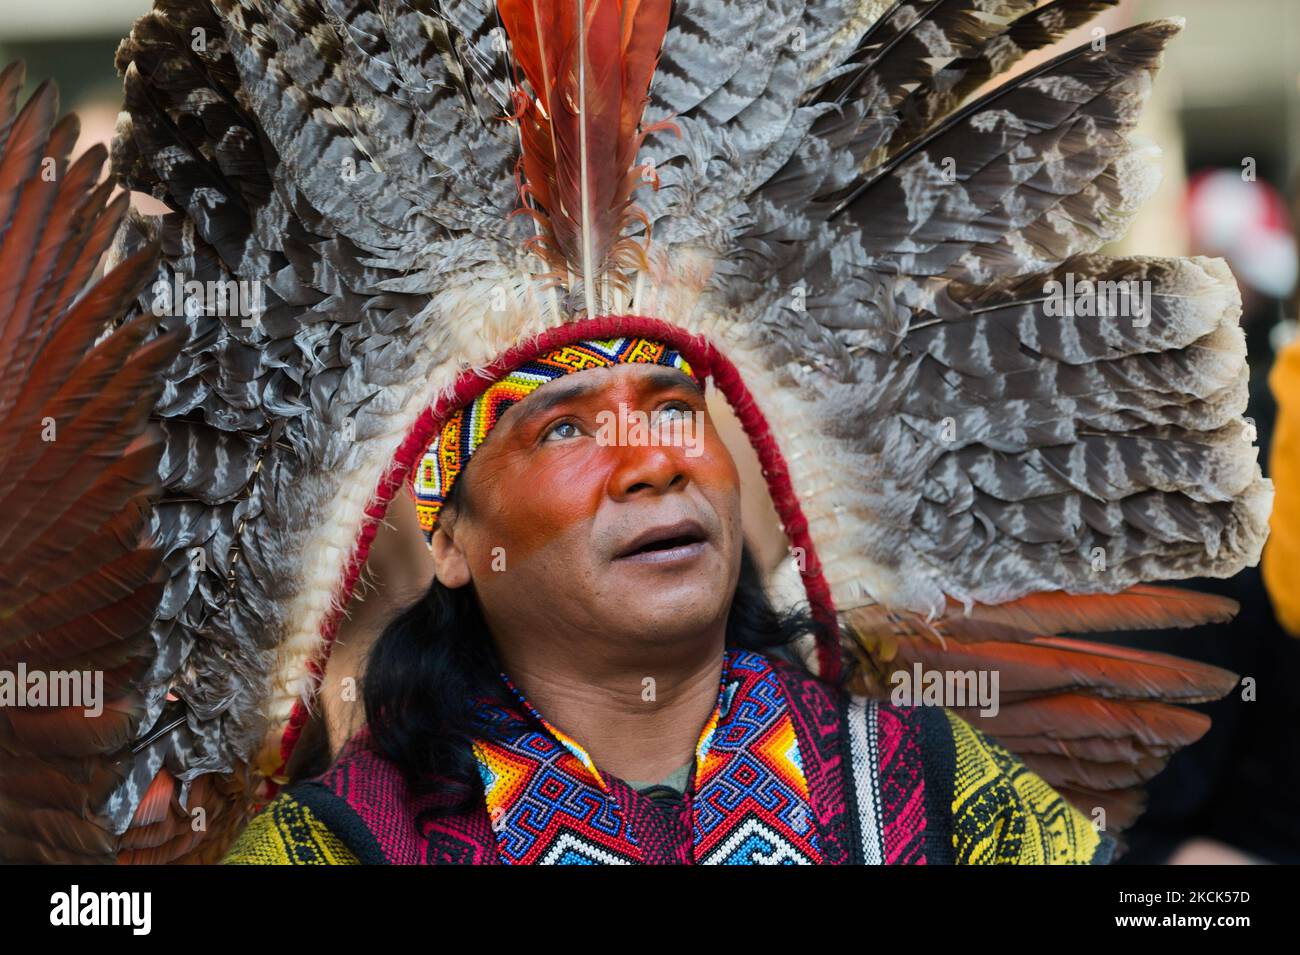 LONDON, GROSSBRITANNIEN – 25. AUGUST 2021: Indigene Völker aus Brasilien nehmen an einem Protest in der Nähe der brasilianischen Botschaft Teil, um sich solidarisch mit den indigenen Völkern Brasiliens zu zeigen, während die Regierung von Bolsonaro versucht, indigenes Land für den Bergbau und andere kommerzielle Aktivitäten zu öffnen, die die Zerstörung des Amazonas-Regenwaldes am 25. August 2021 verschärfen könnten In London, England. Die Demonstranten demonstrieren gegen den Kongressentwurf 490/2007, der indigene Völker daran hindern würde, ihre traditionellen Ländereien rechtlich anzuerkennen, wenn sie nicht durch die willkürlichen 1 dort anwesend wären Stockfoto